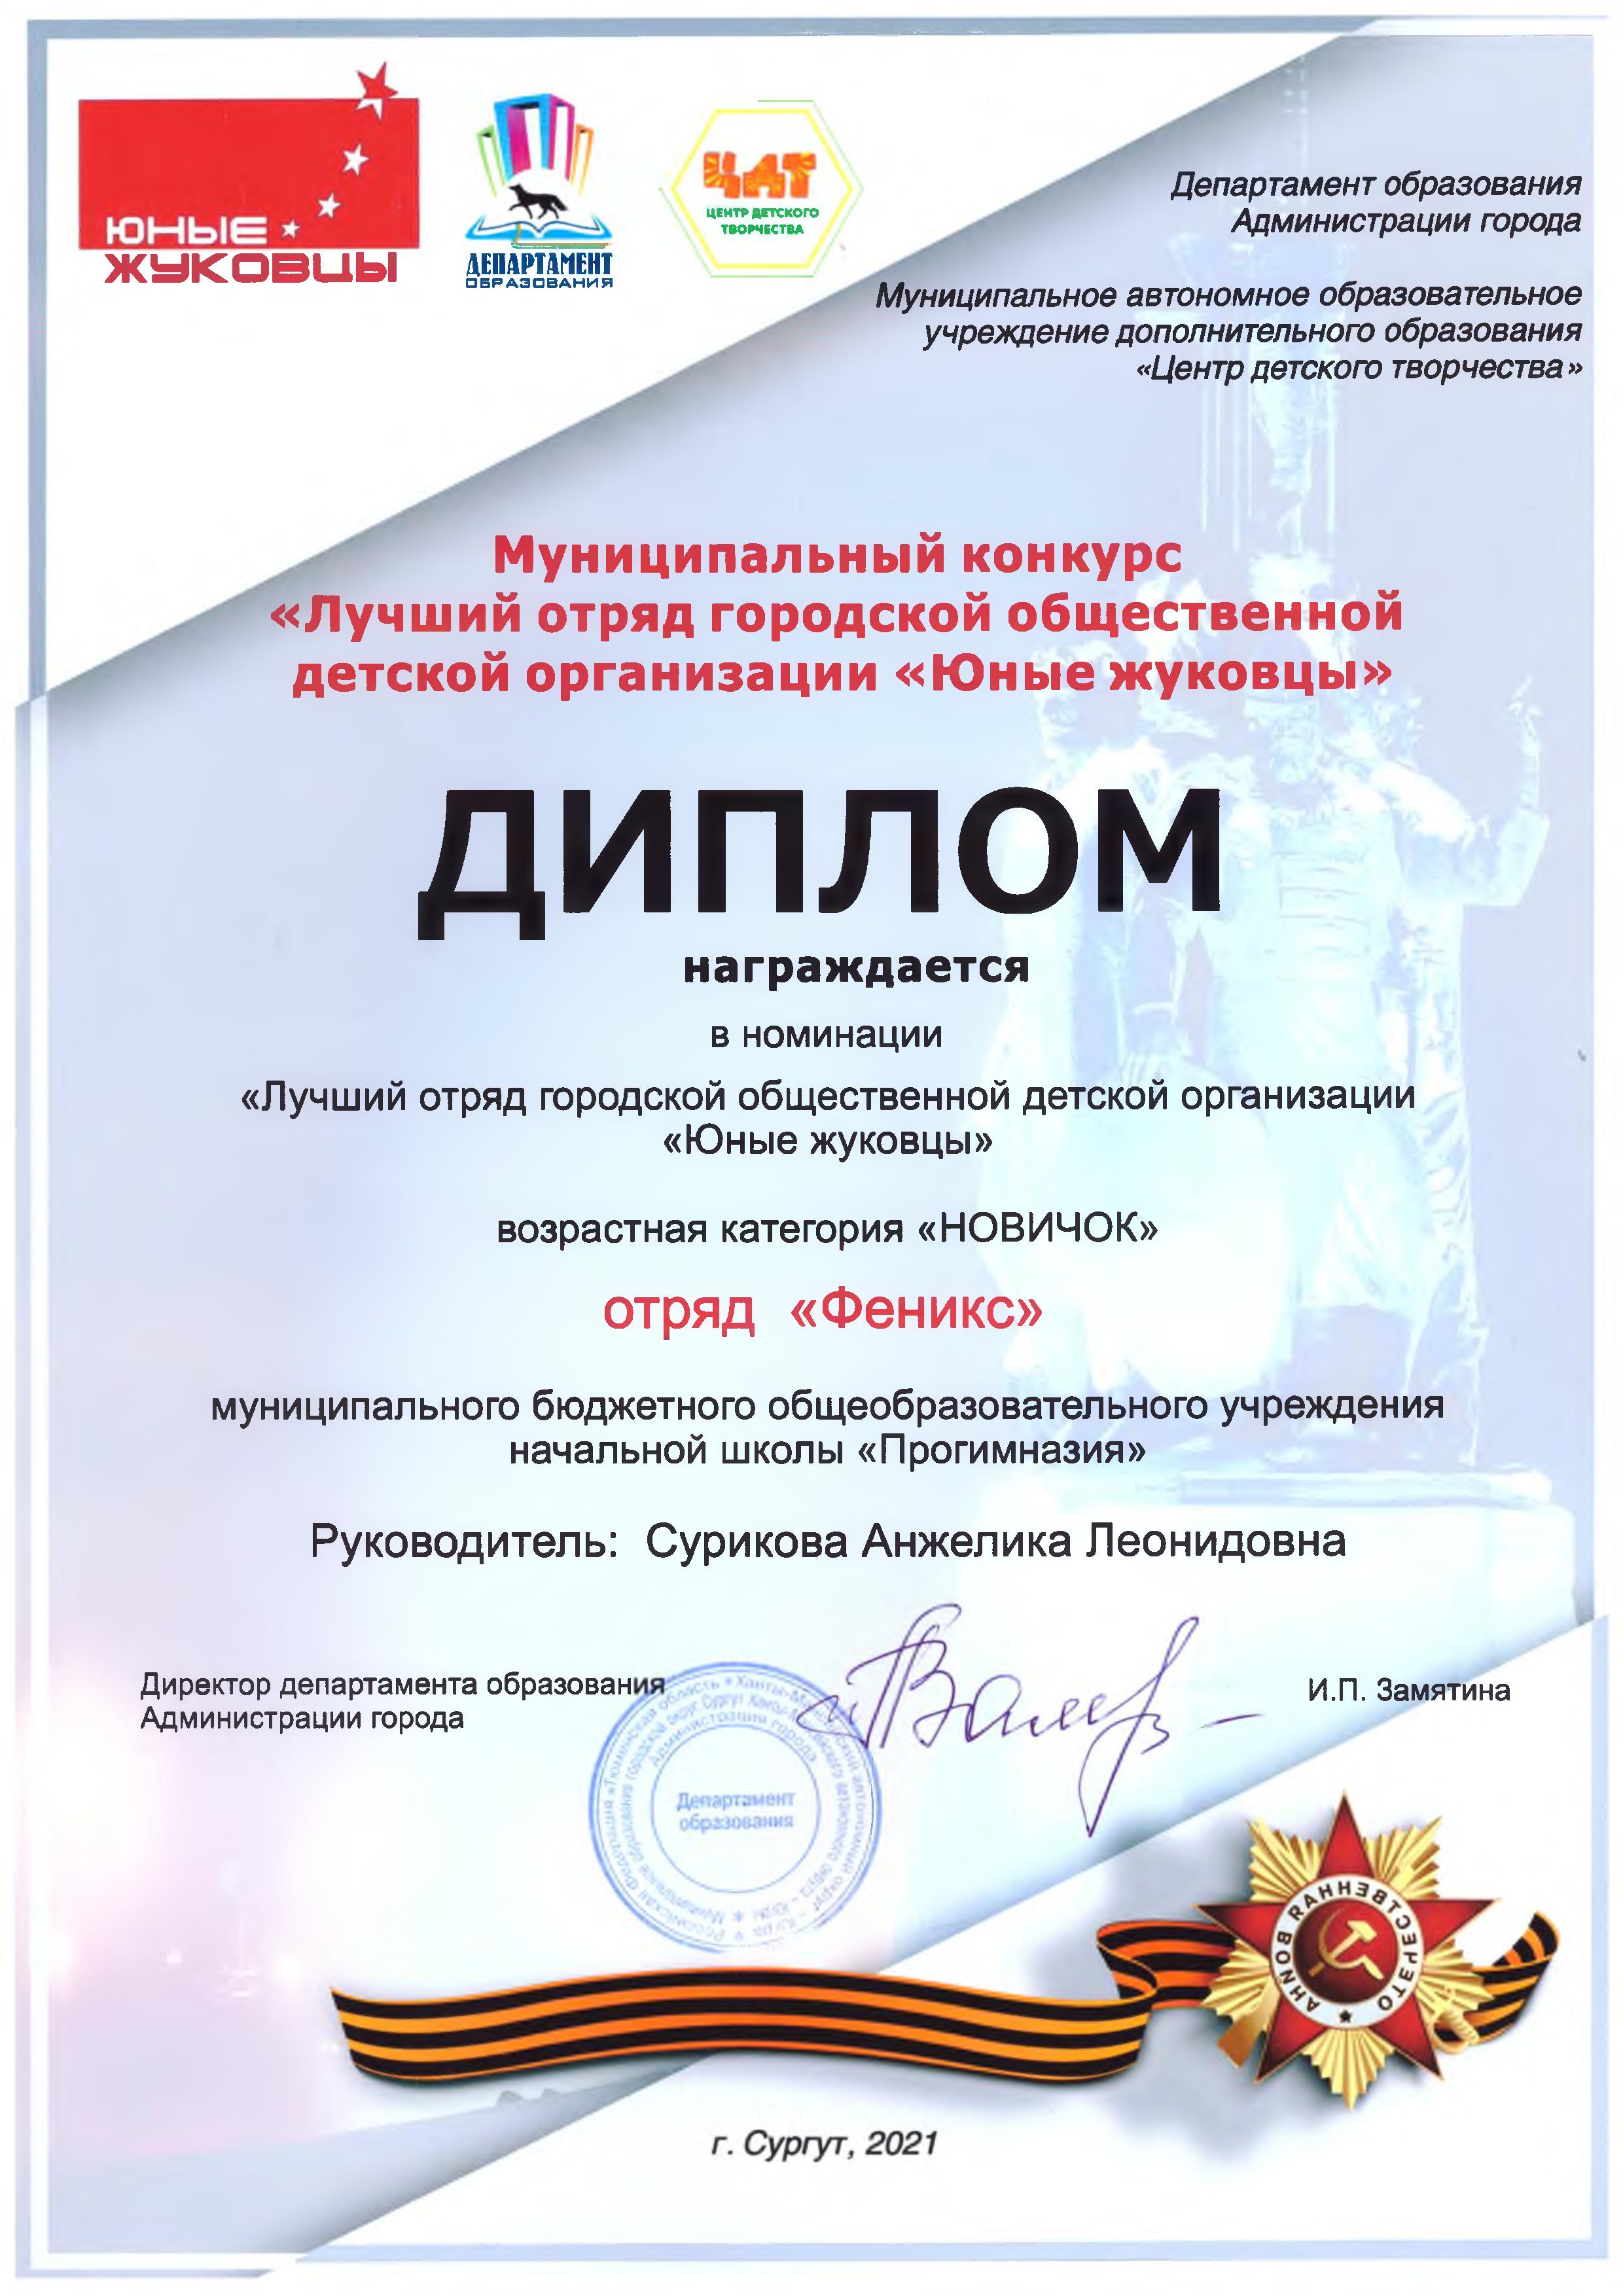 Диплом муниципального конкурса "Лучший отряд Юные жуковцы"